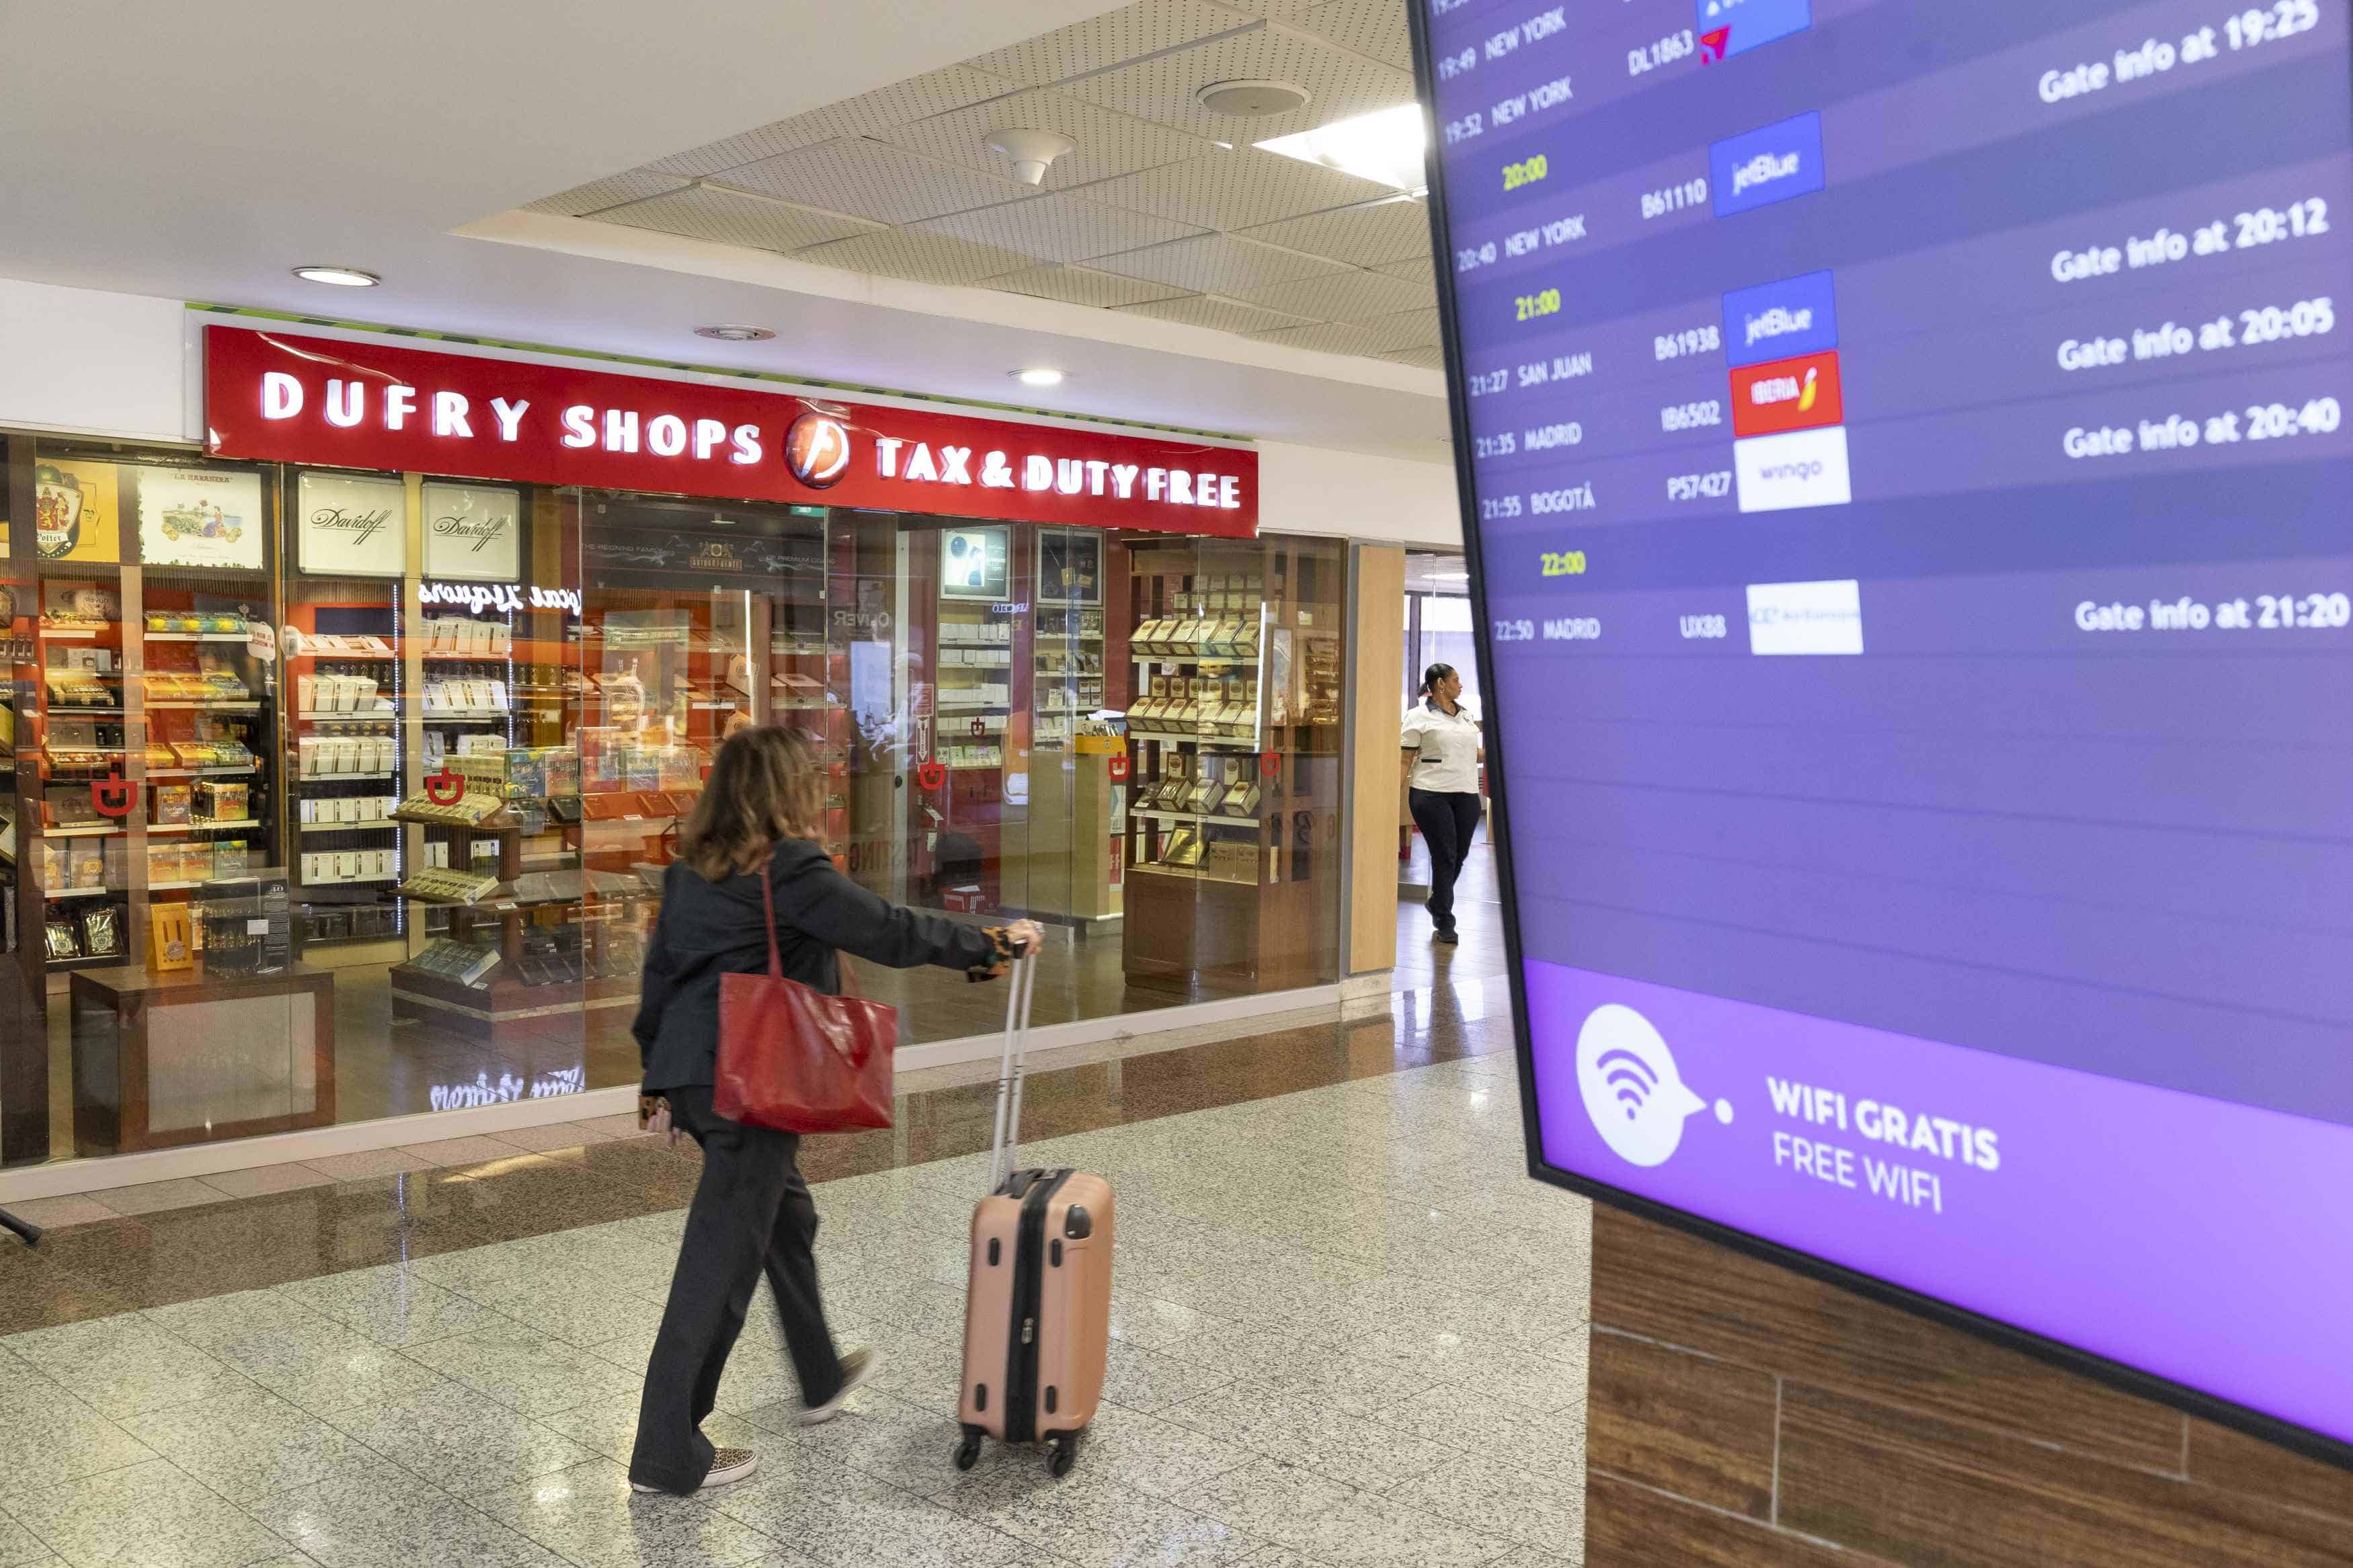 Una pasajera en la zona restreingida de la terminal B del aeropuerto, donde se visualiza una pantalla con los itinerarios de vuelo.